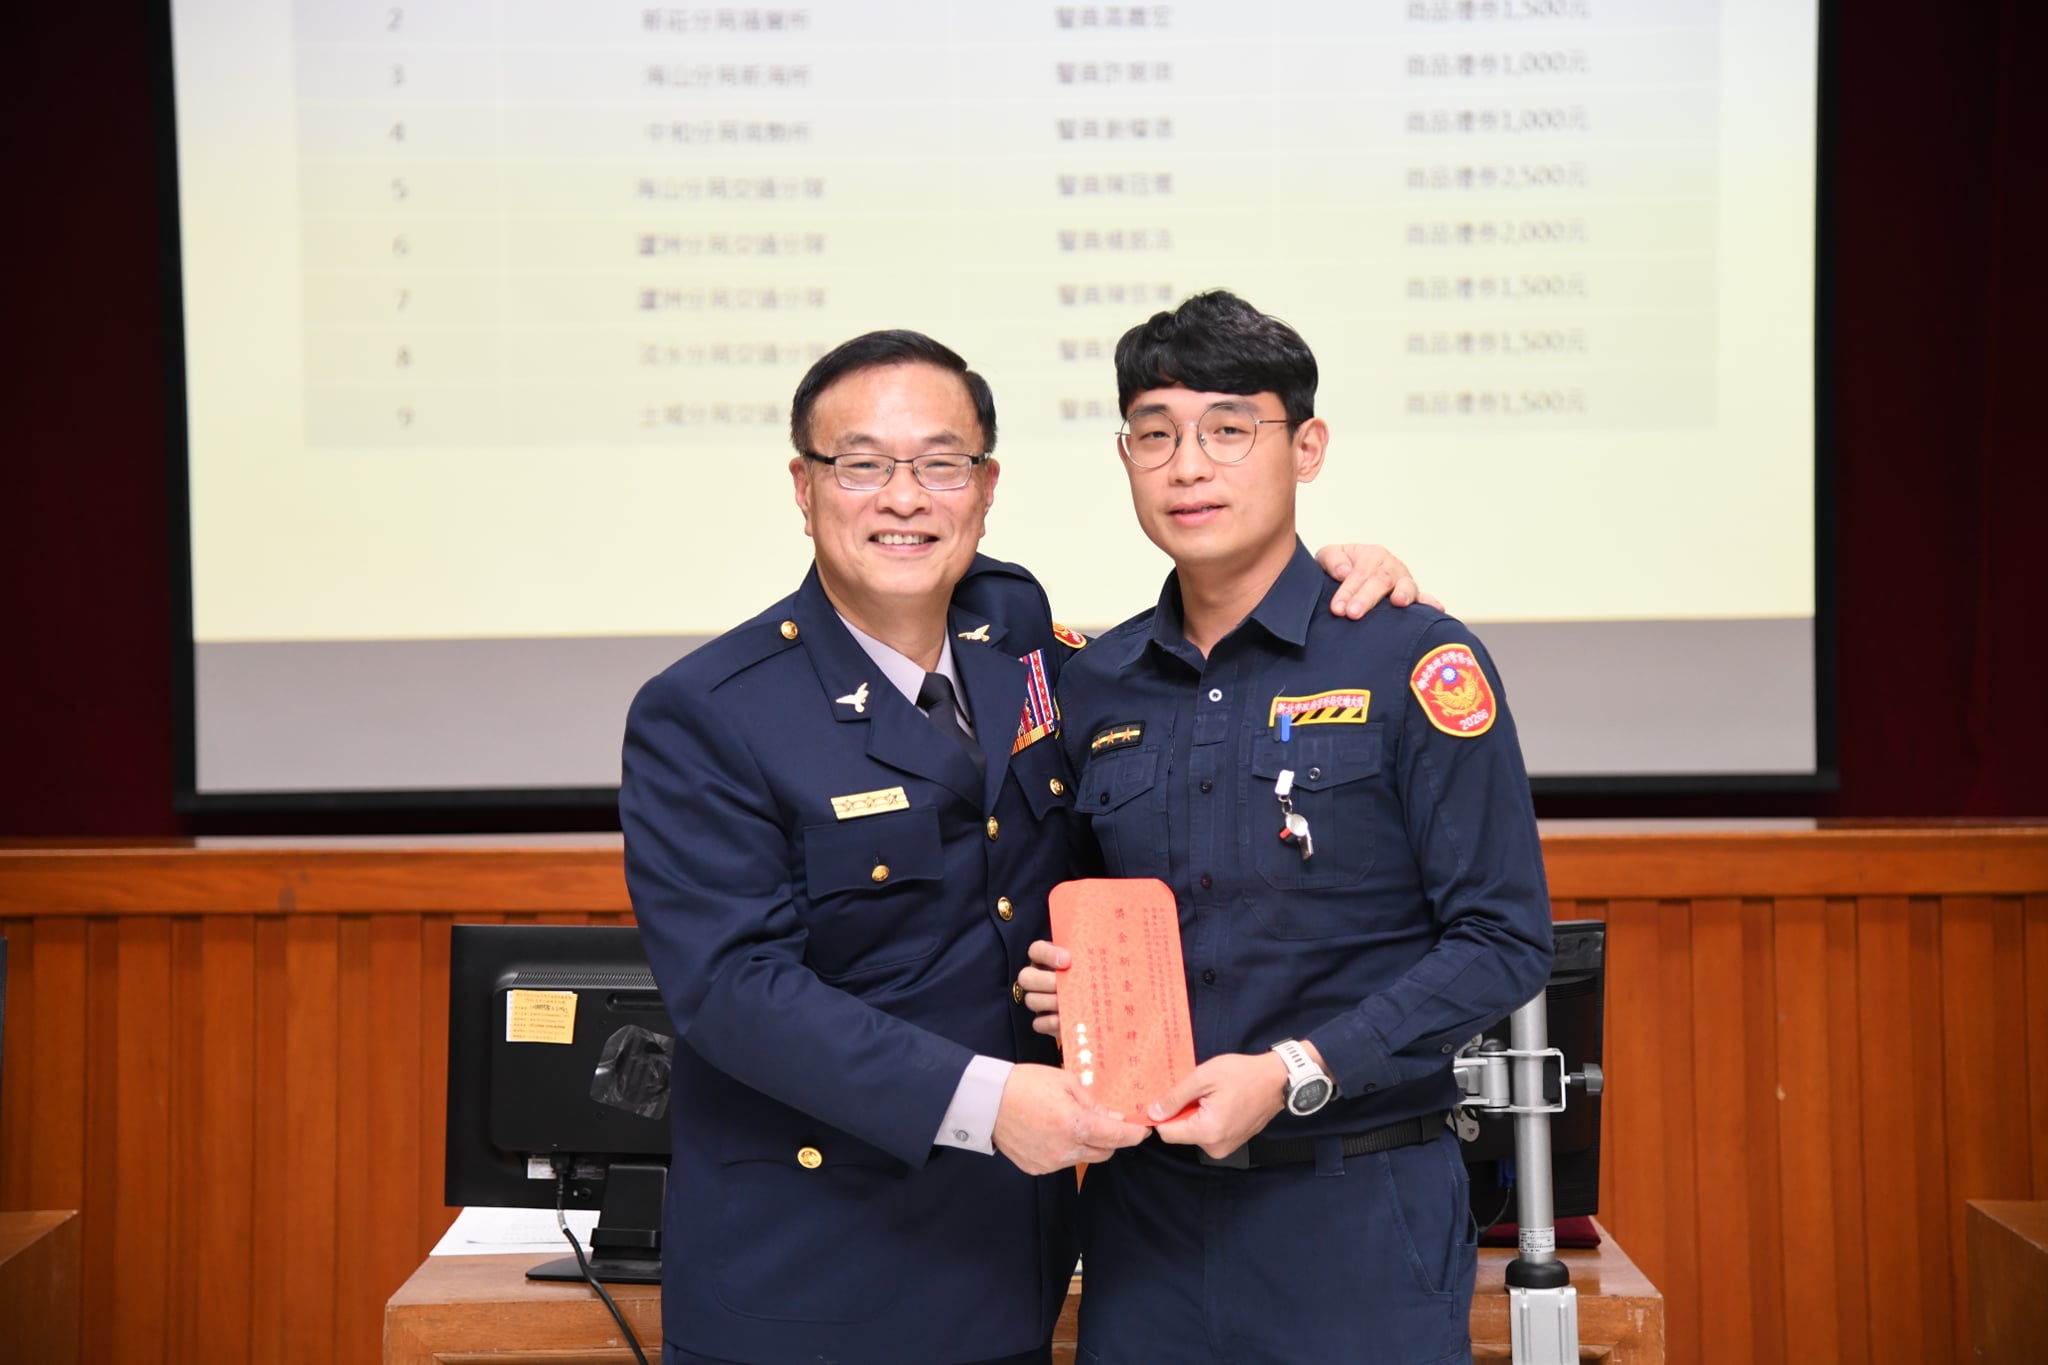 交通分隊警員吳鎮宇榮獲109年10至12月份偵查犯罪績效評核個人組績優